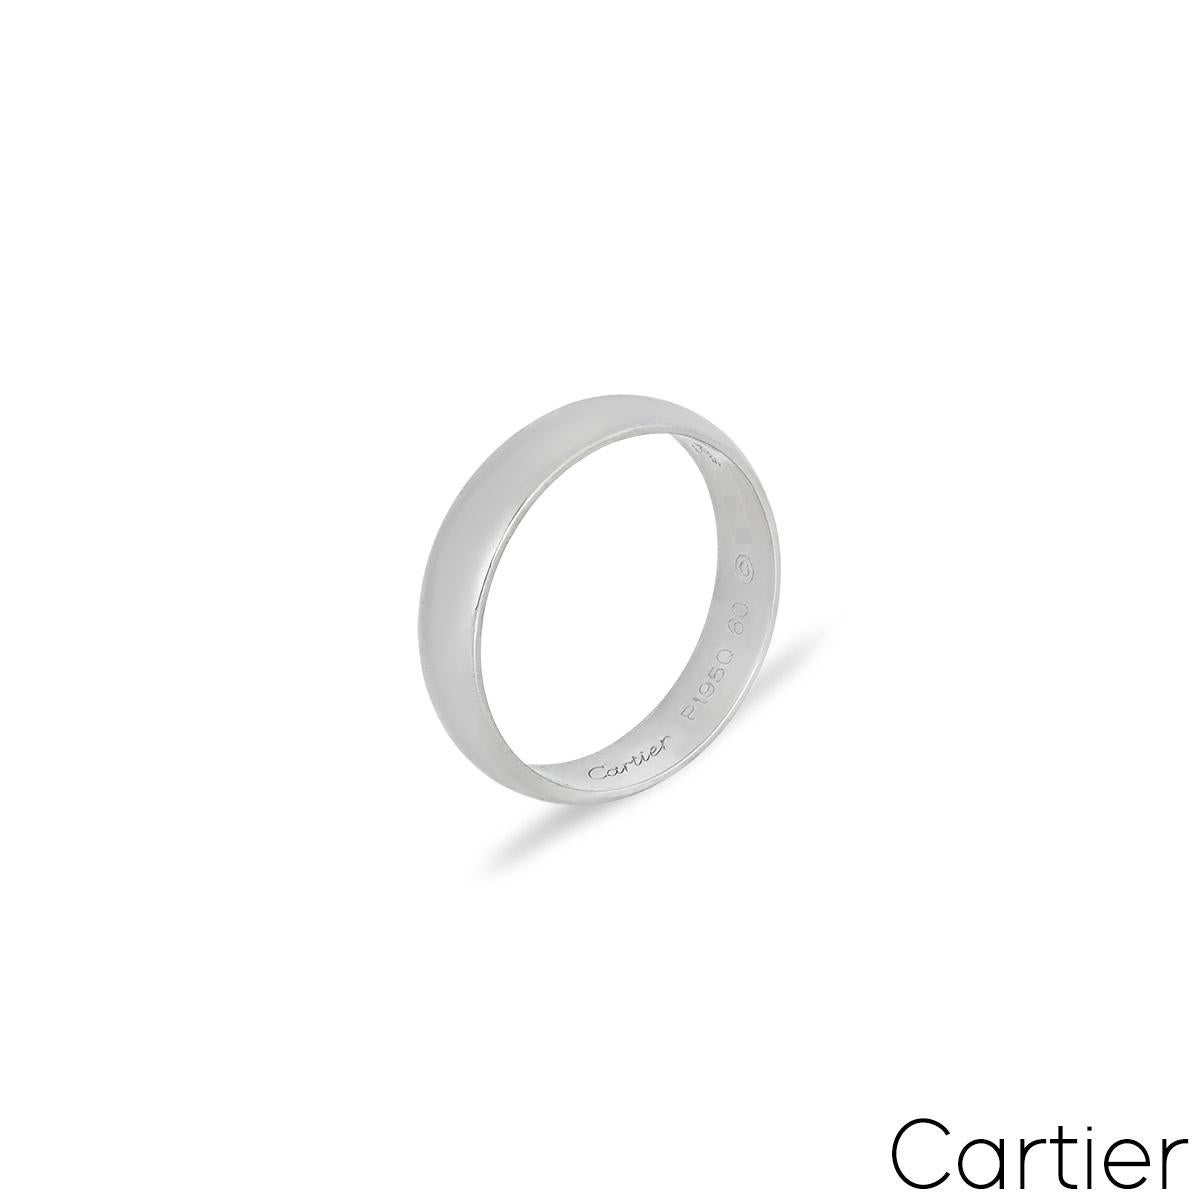 Ein schlichter Ehering aus Platin von Cartier aus der Collection'S 1895. Der 5 mm große Ring ist hochglanzpoliert, entspricht der britischen Größe S/ US-Größe 9/ EU-Größe 60 und hat ein Bruttogewicht von 7,00 Gramm.

Kommt komplett mit einer